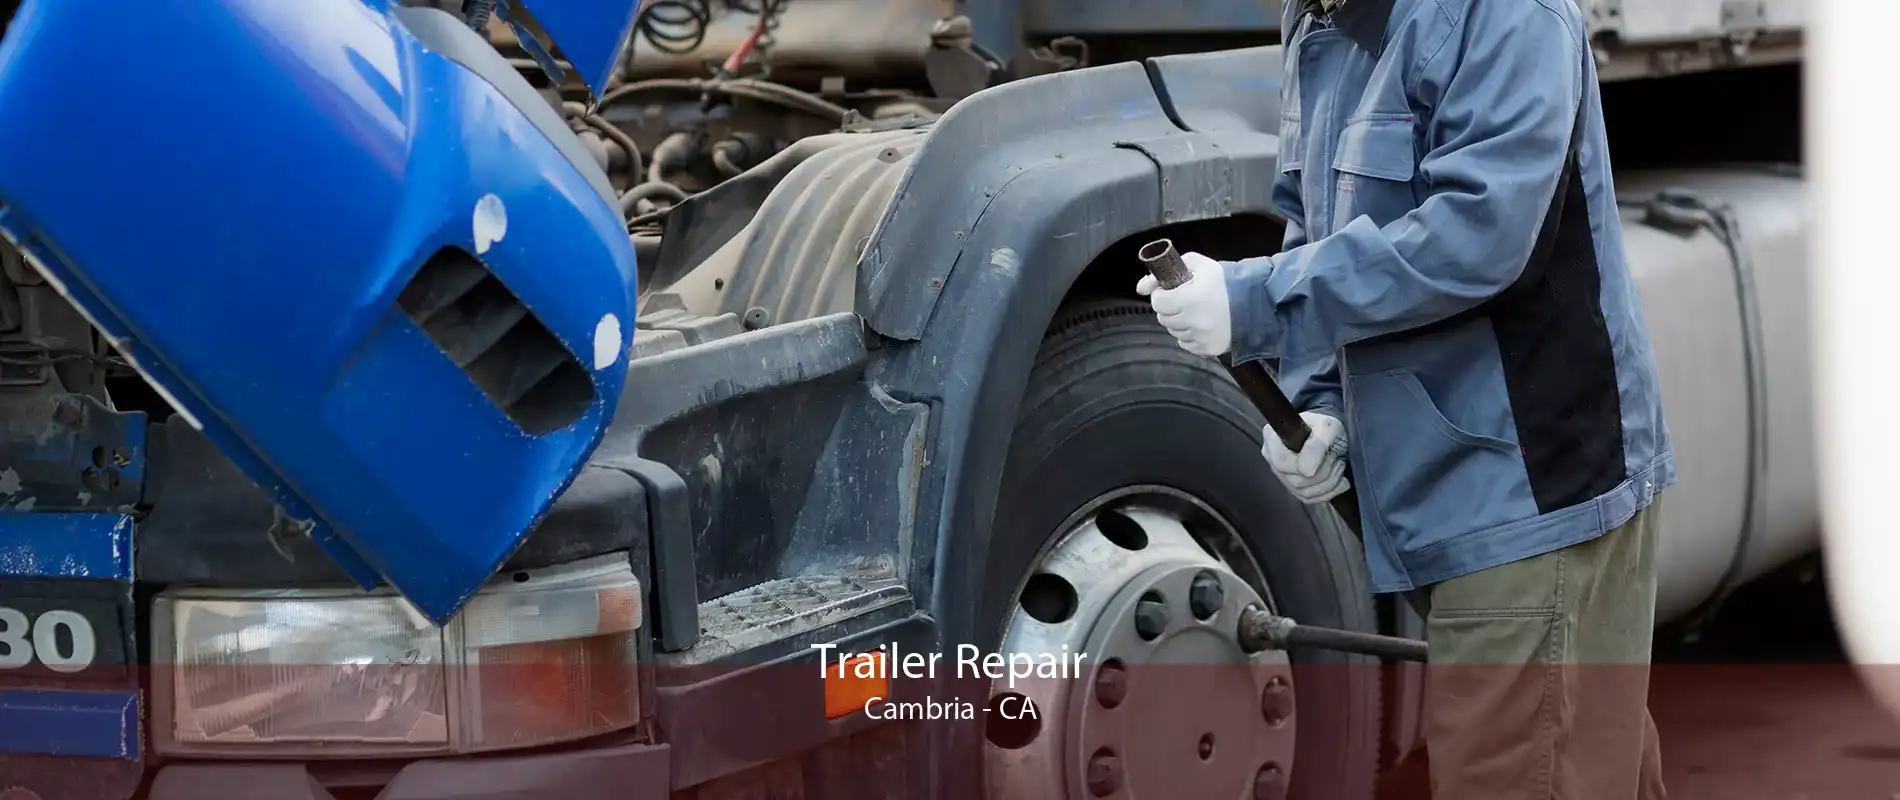 Trailer Repair Cambria - CA